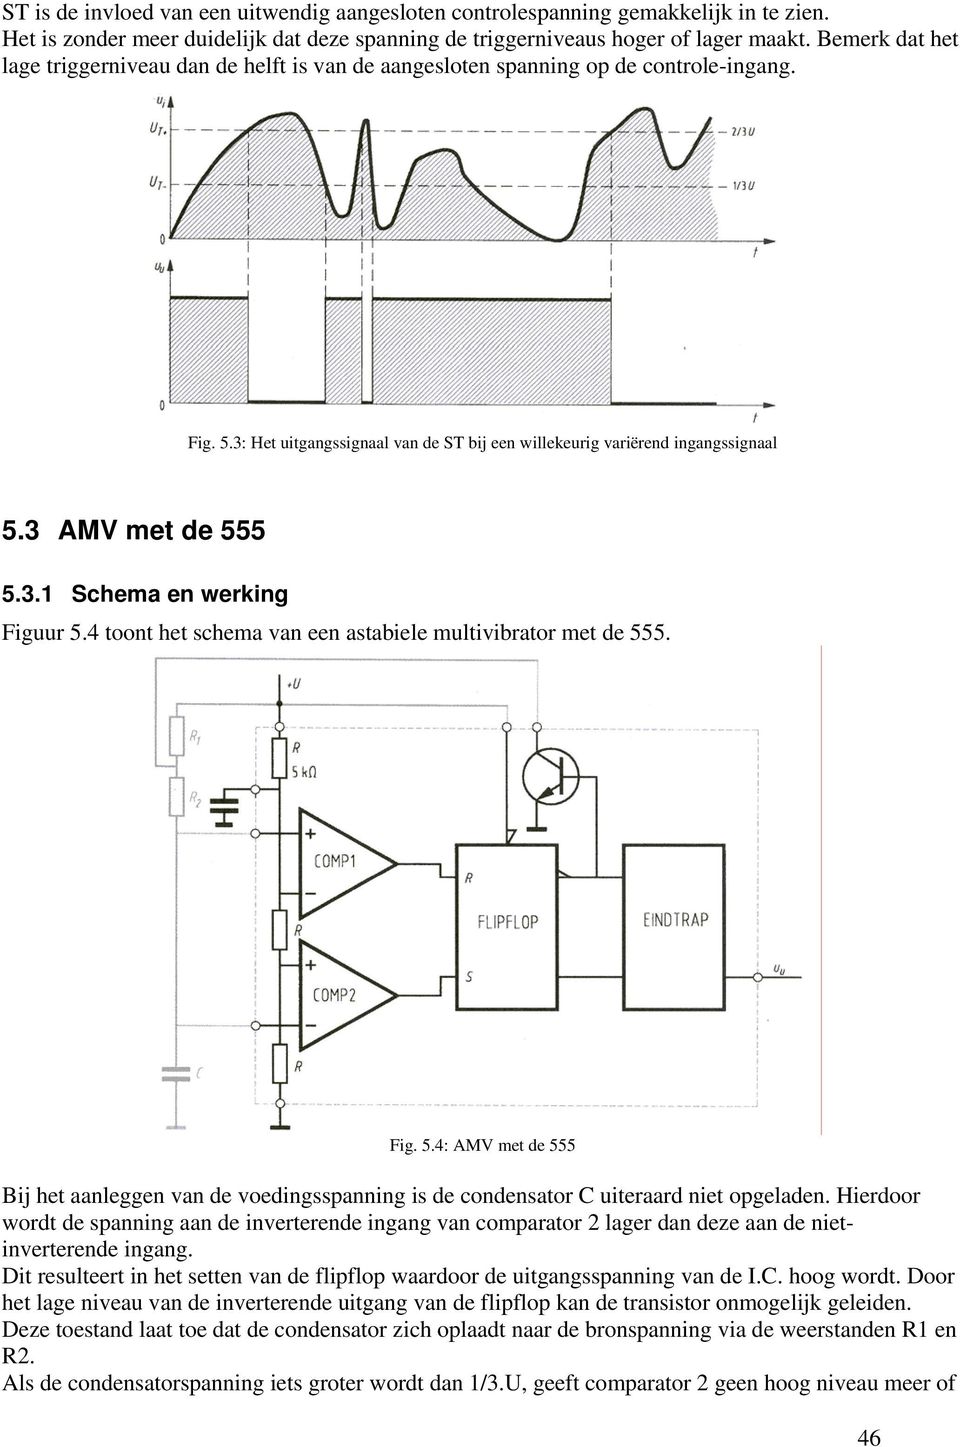 3 AMV met de 555 5.3.1 Schema en werking Figuur 5.4 toont het schema van een astabiele multivibrator met de 555. Fig. 5.4: AMV met de 555 Bij het aanleggen van de voedingsspanning is de condensator C uiteraard niet opgeladen.